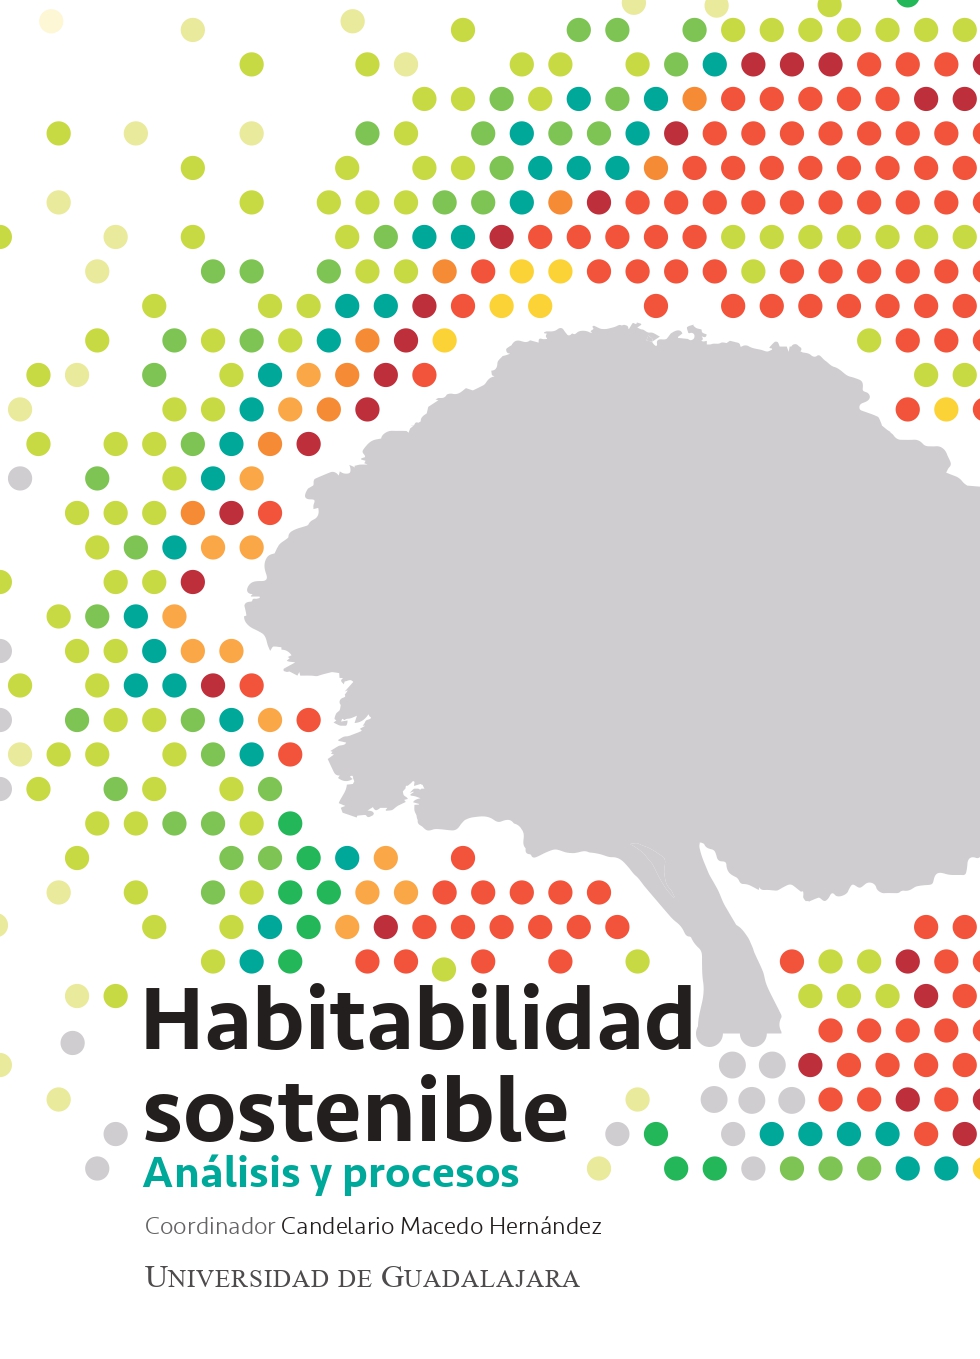 Habitabilidad sostenible. Análisis y procesos<br />
                